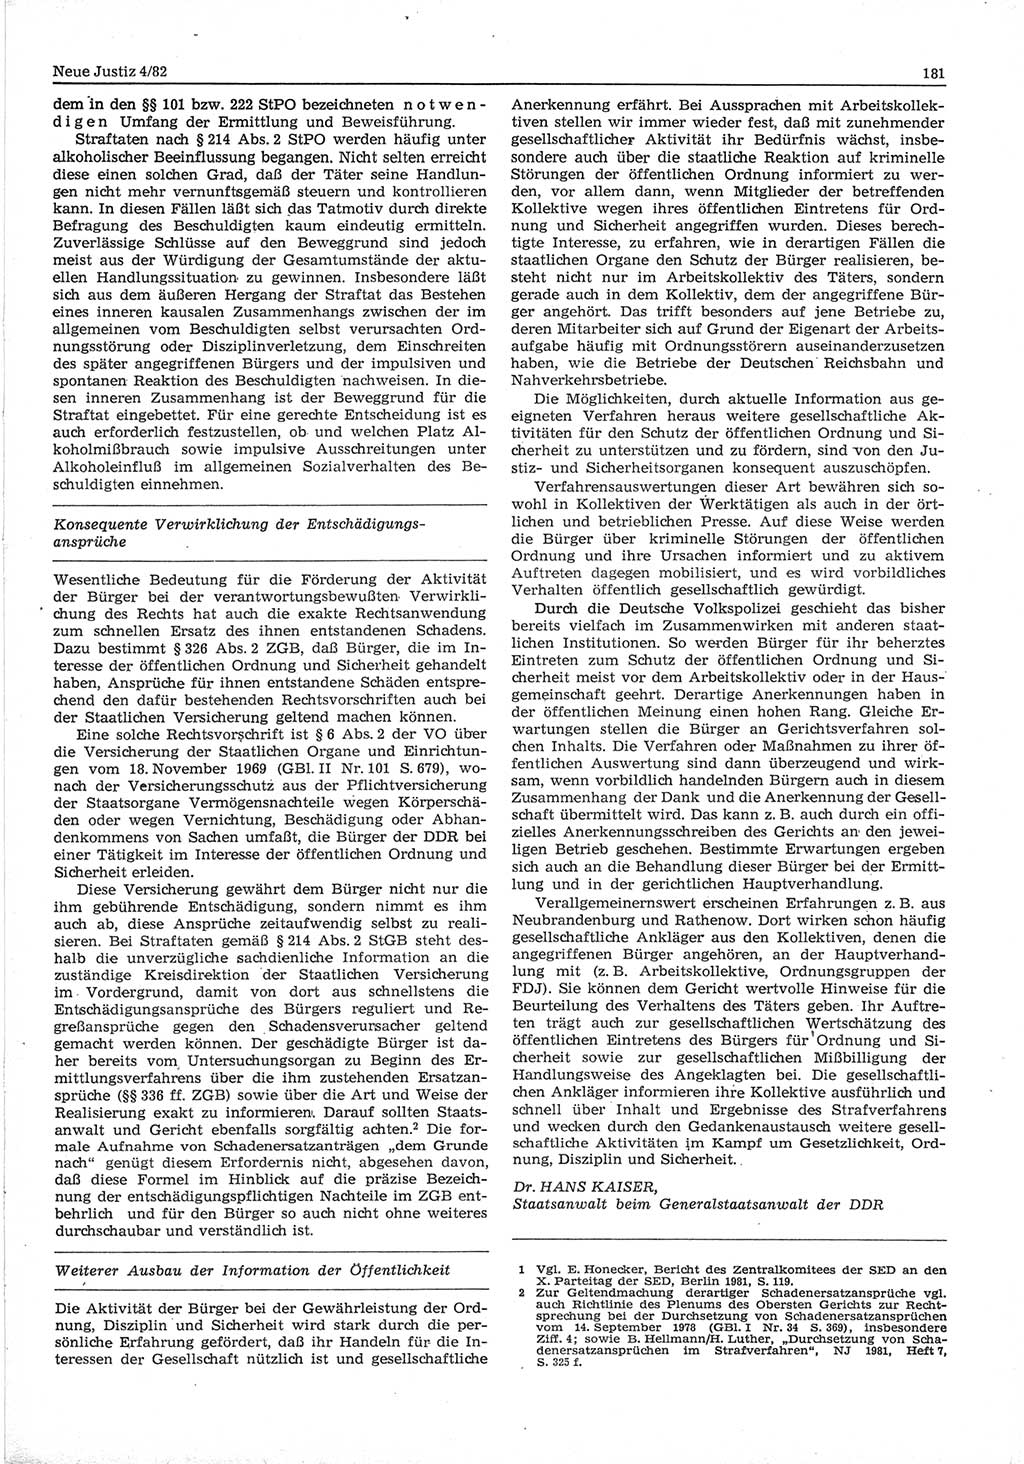 Neue Justiz (NJ), Zeitschrift für sozialistisches Recht und Gesetzlichkeit [Deutsche Demokratische Republik (DDR)], 36. Jahrgang 1982, Seite 181 (NJ DDR 1982, S. 181)